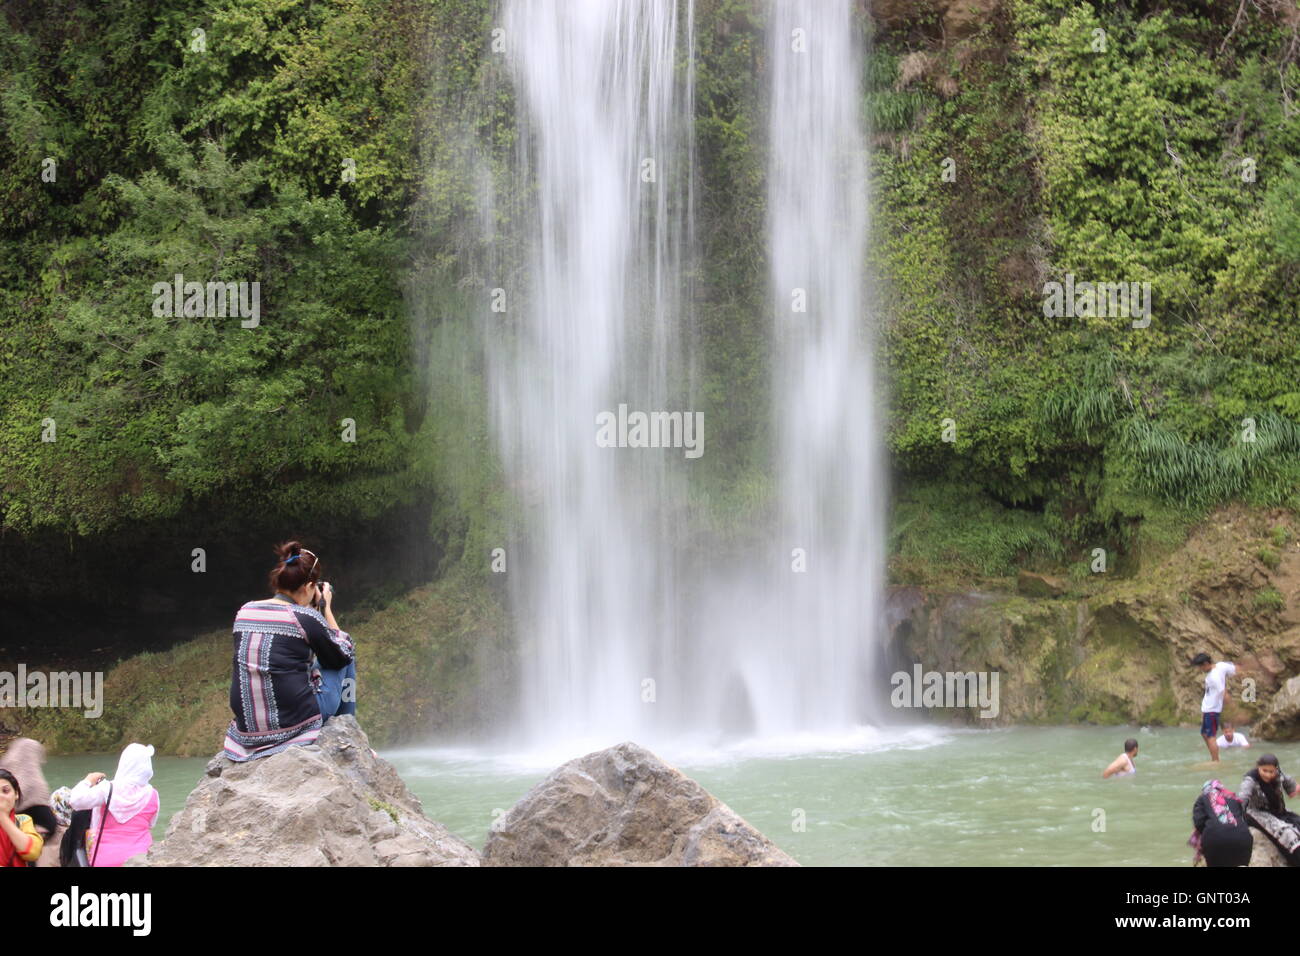 Obturador lento de una foto de una cascada, el agua que corre hacia abajo creando un efecto de ensueño.Una niña sentada sobre una roca, capturando la escena Foto de stock